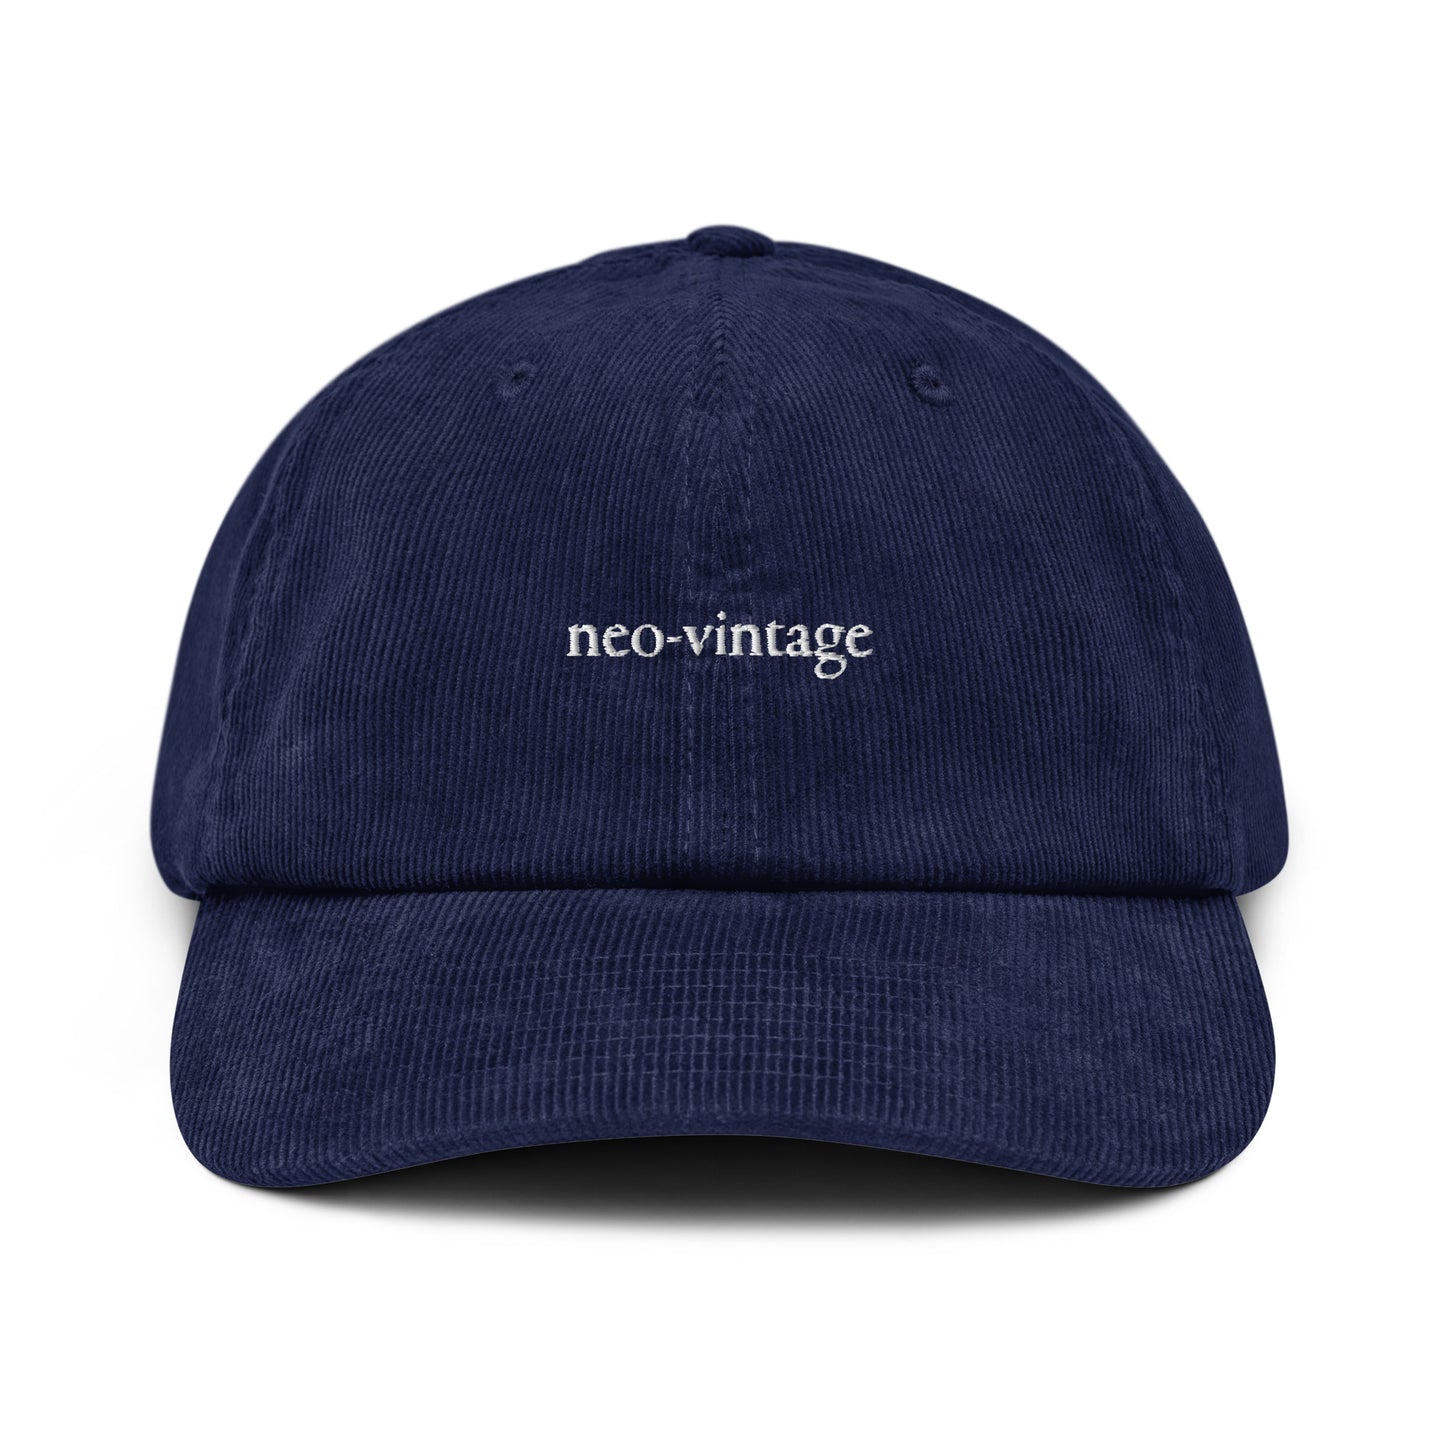 neo-vintage Corduroy hat